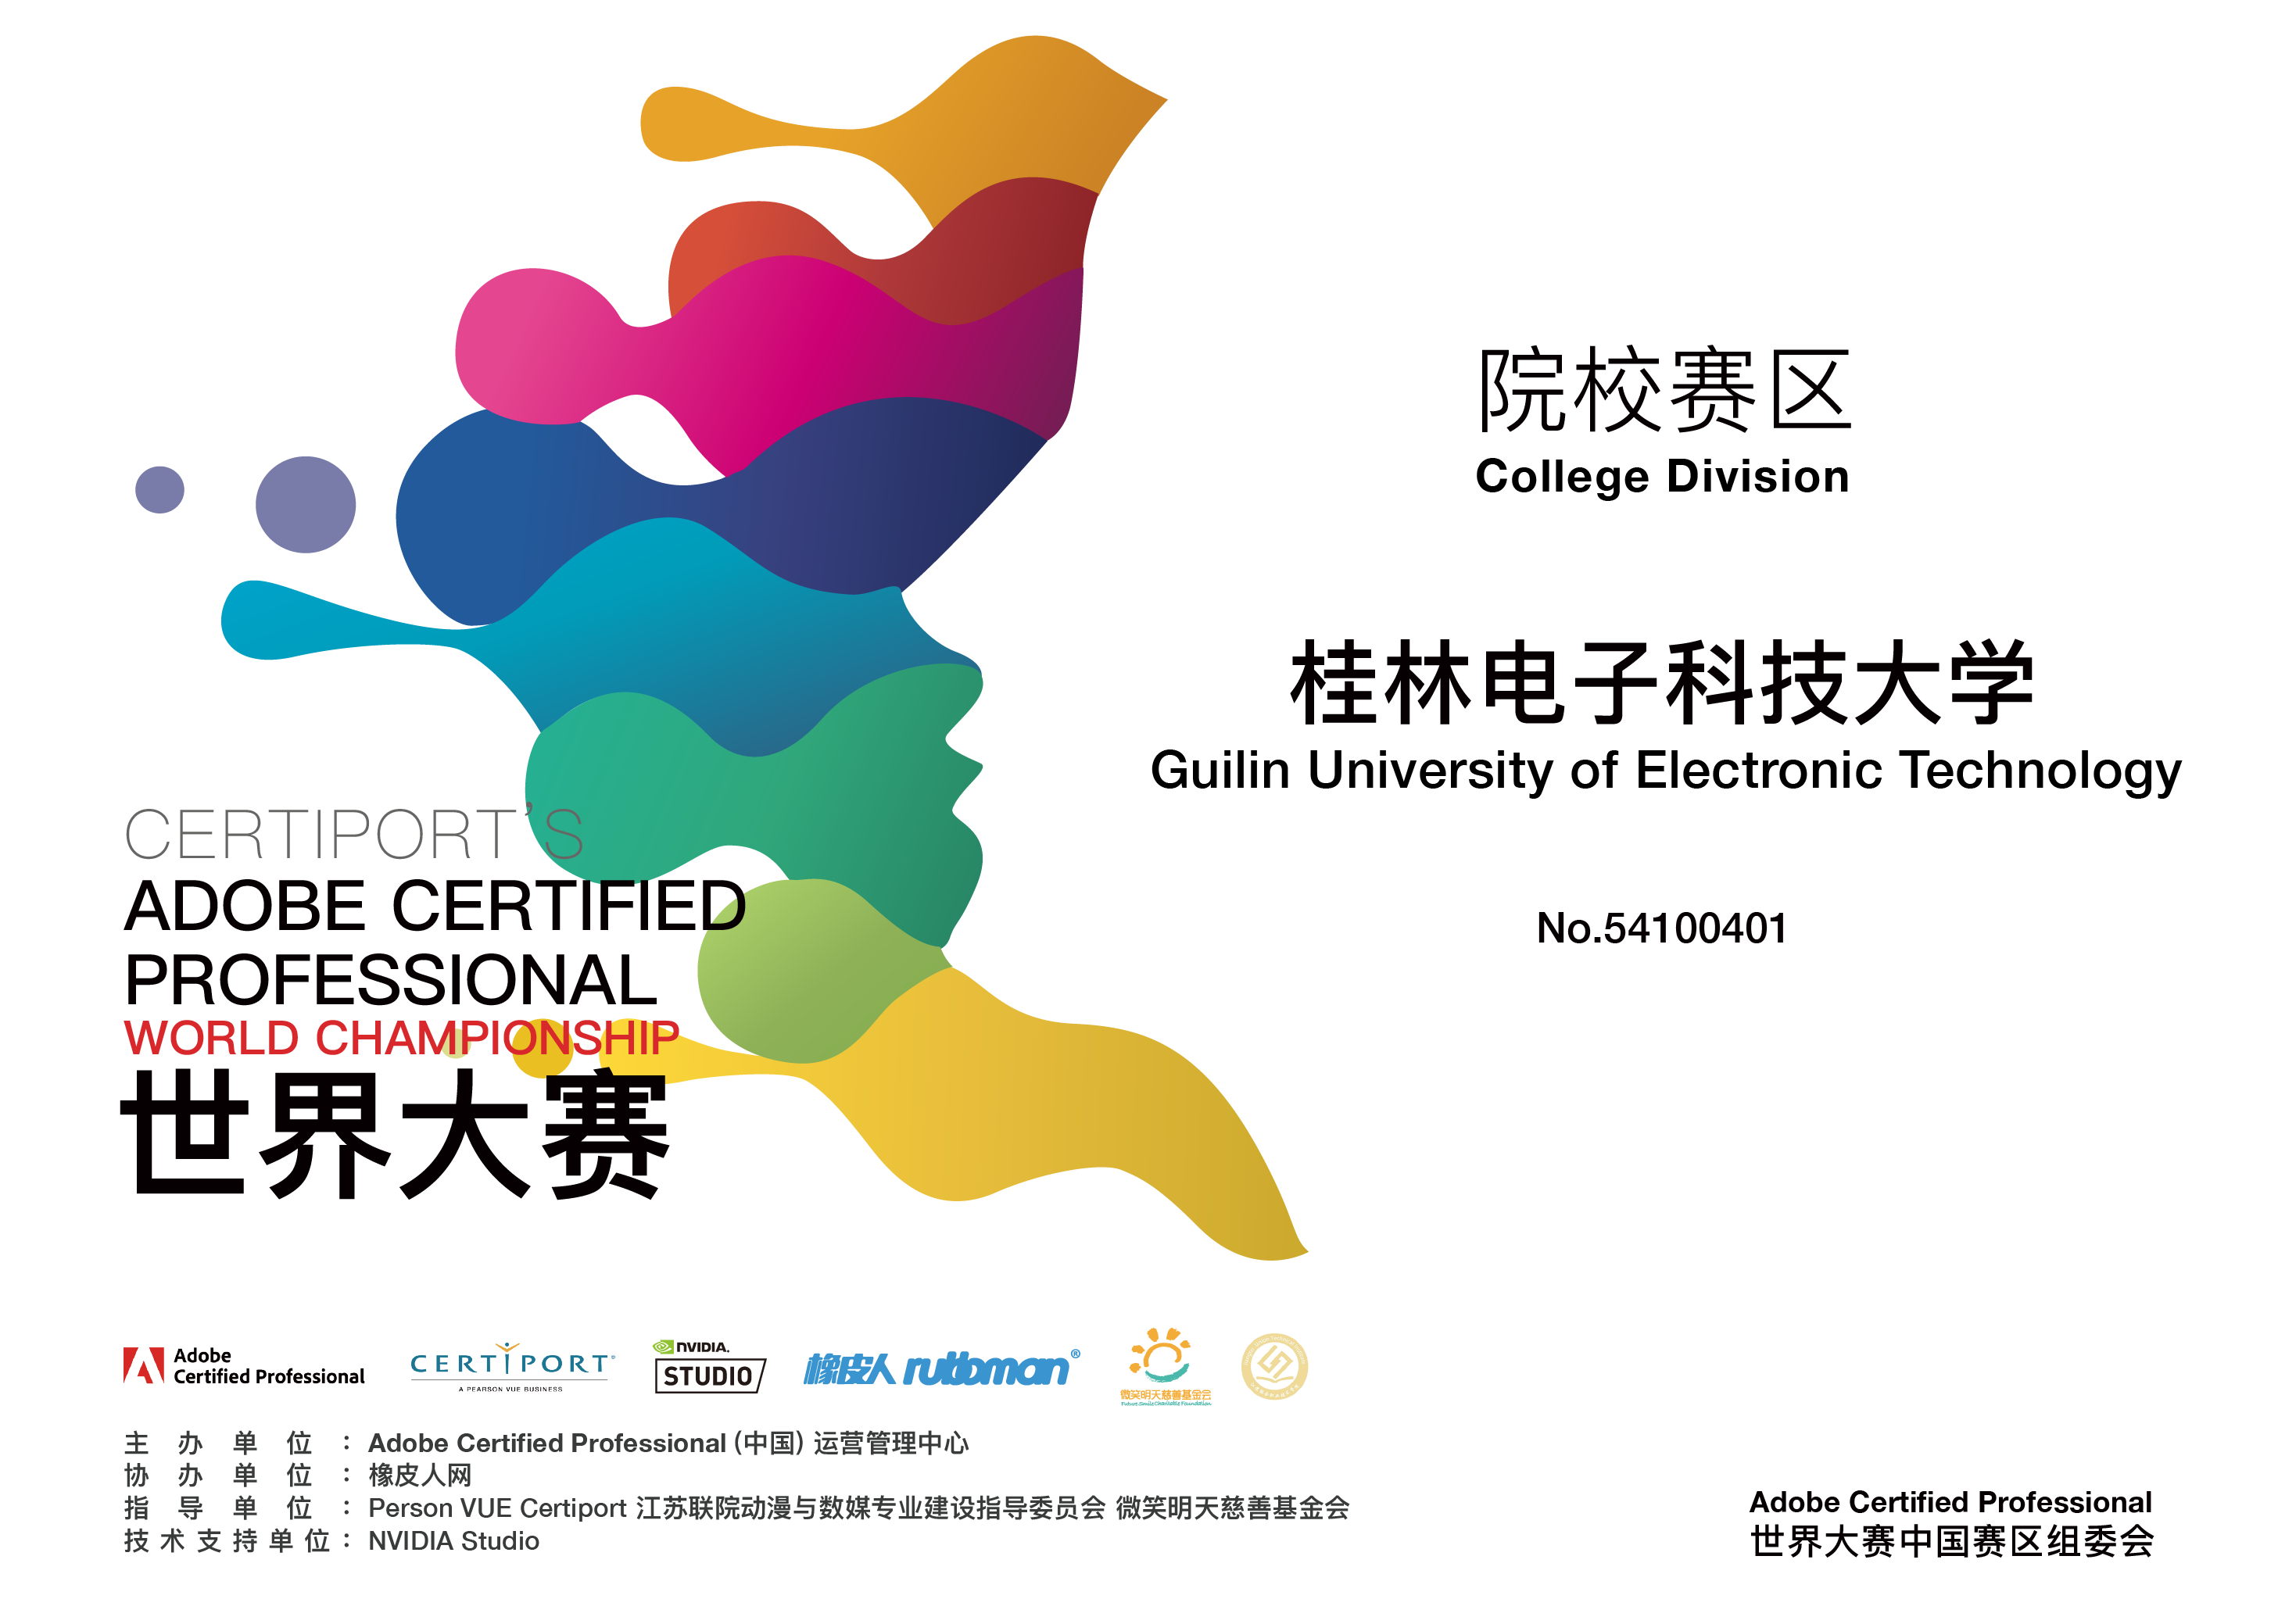 桂林电子科技大学加入2022 Adobe Certified Professional世界大赛